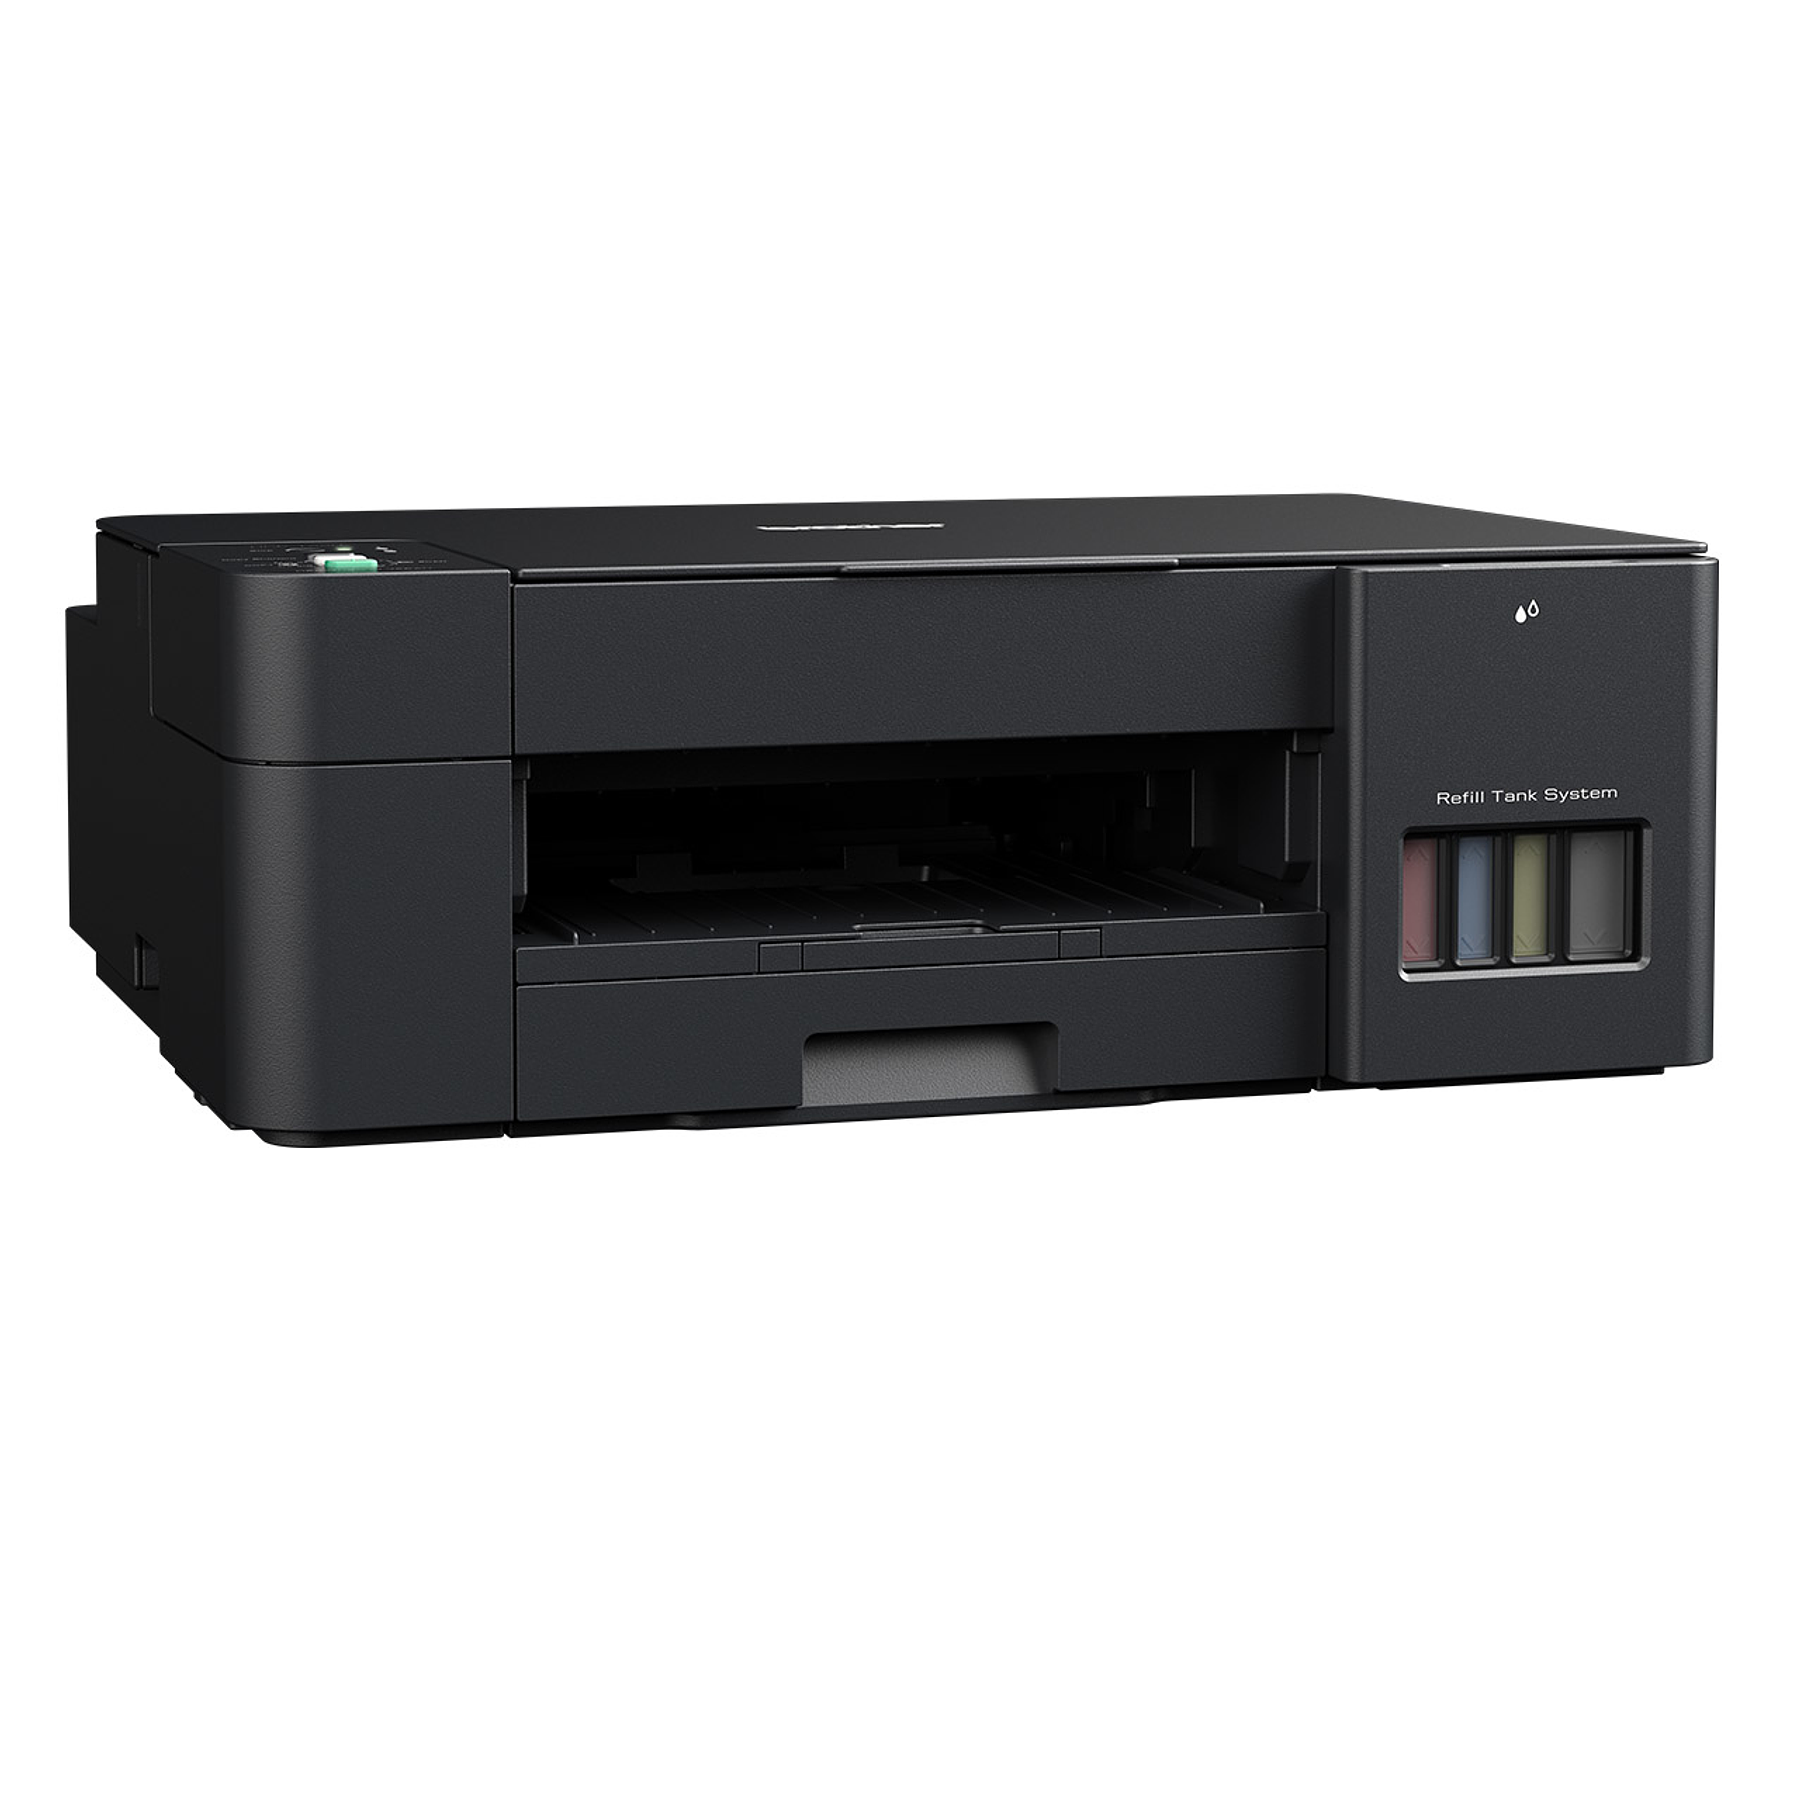 Brother DCP-T220 Impresora Multifunción Tinta Color